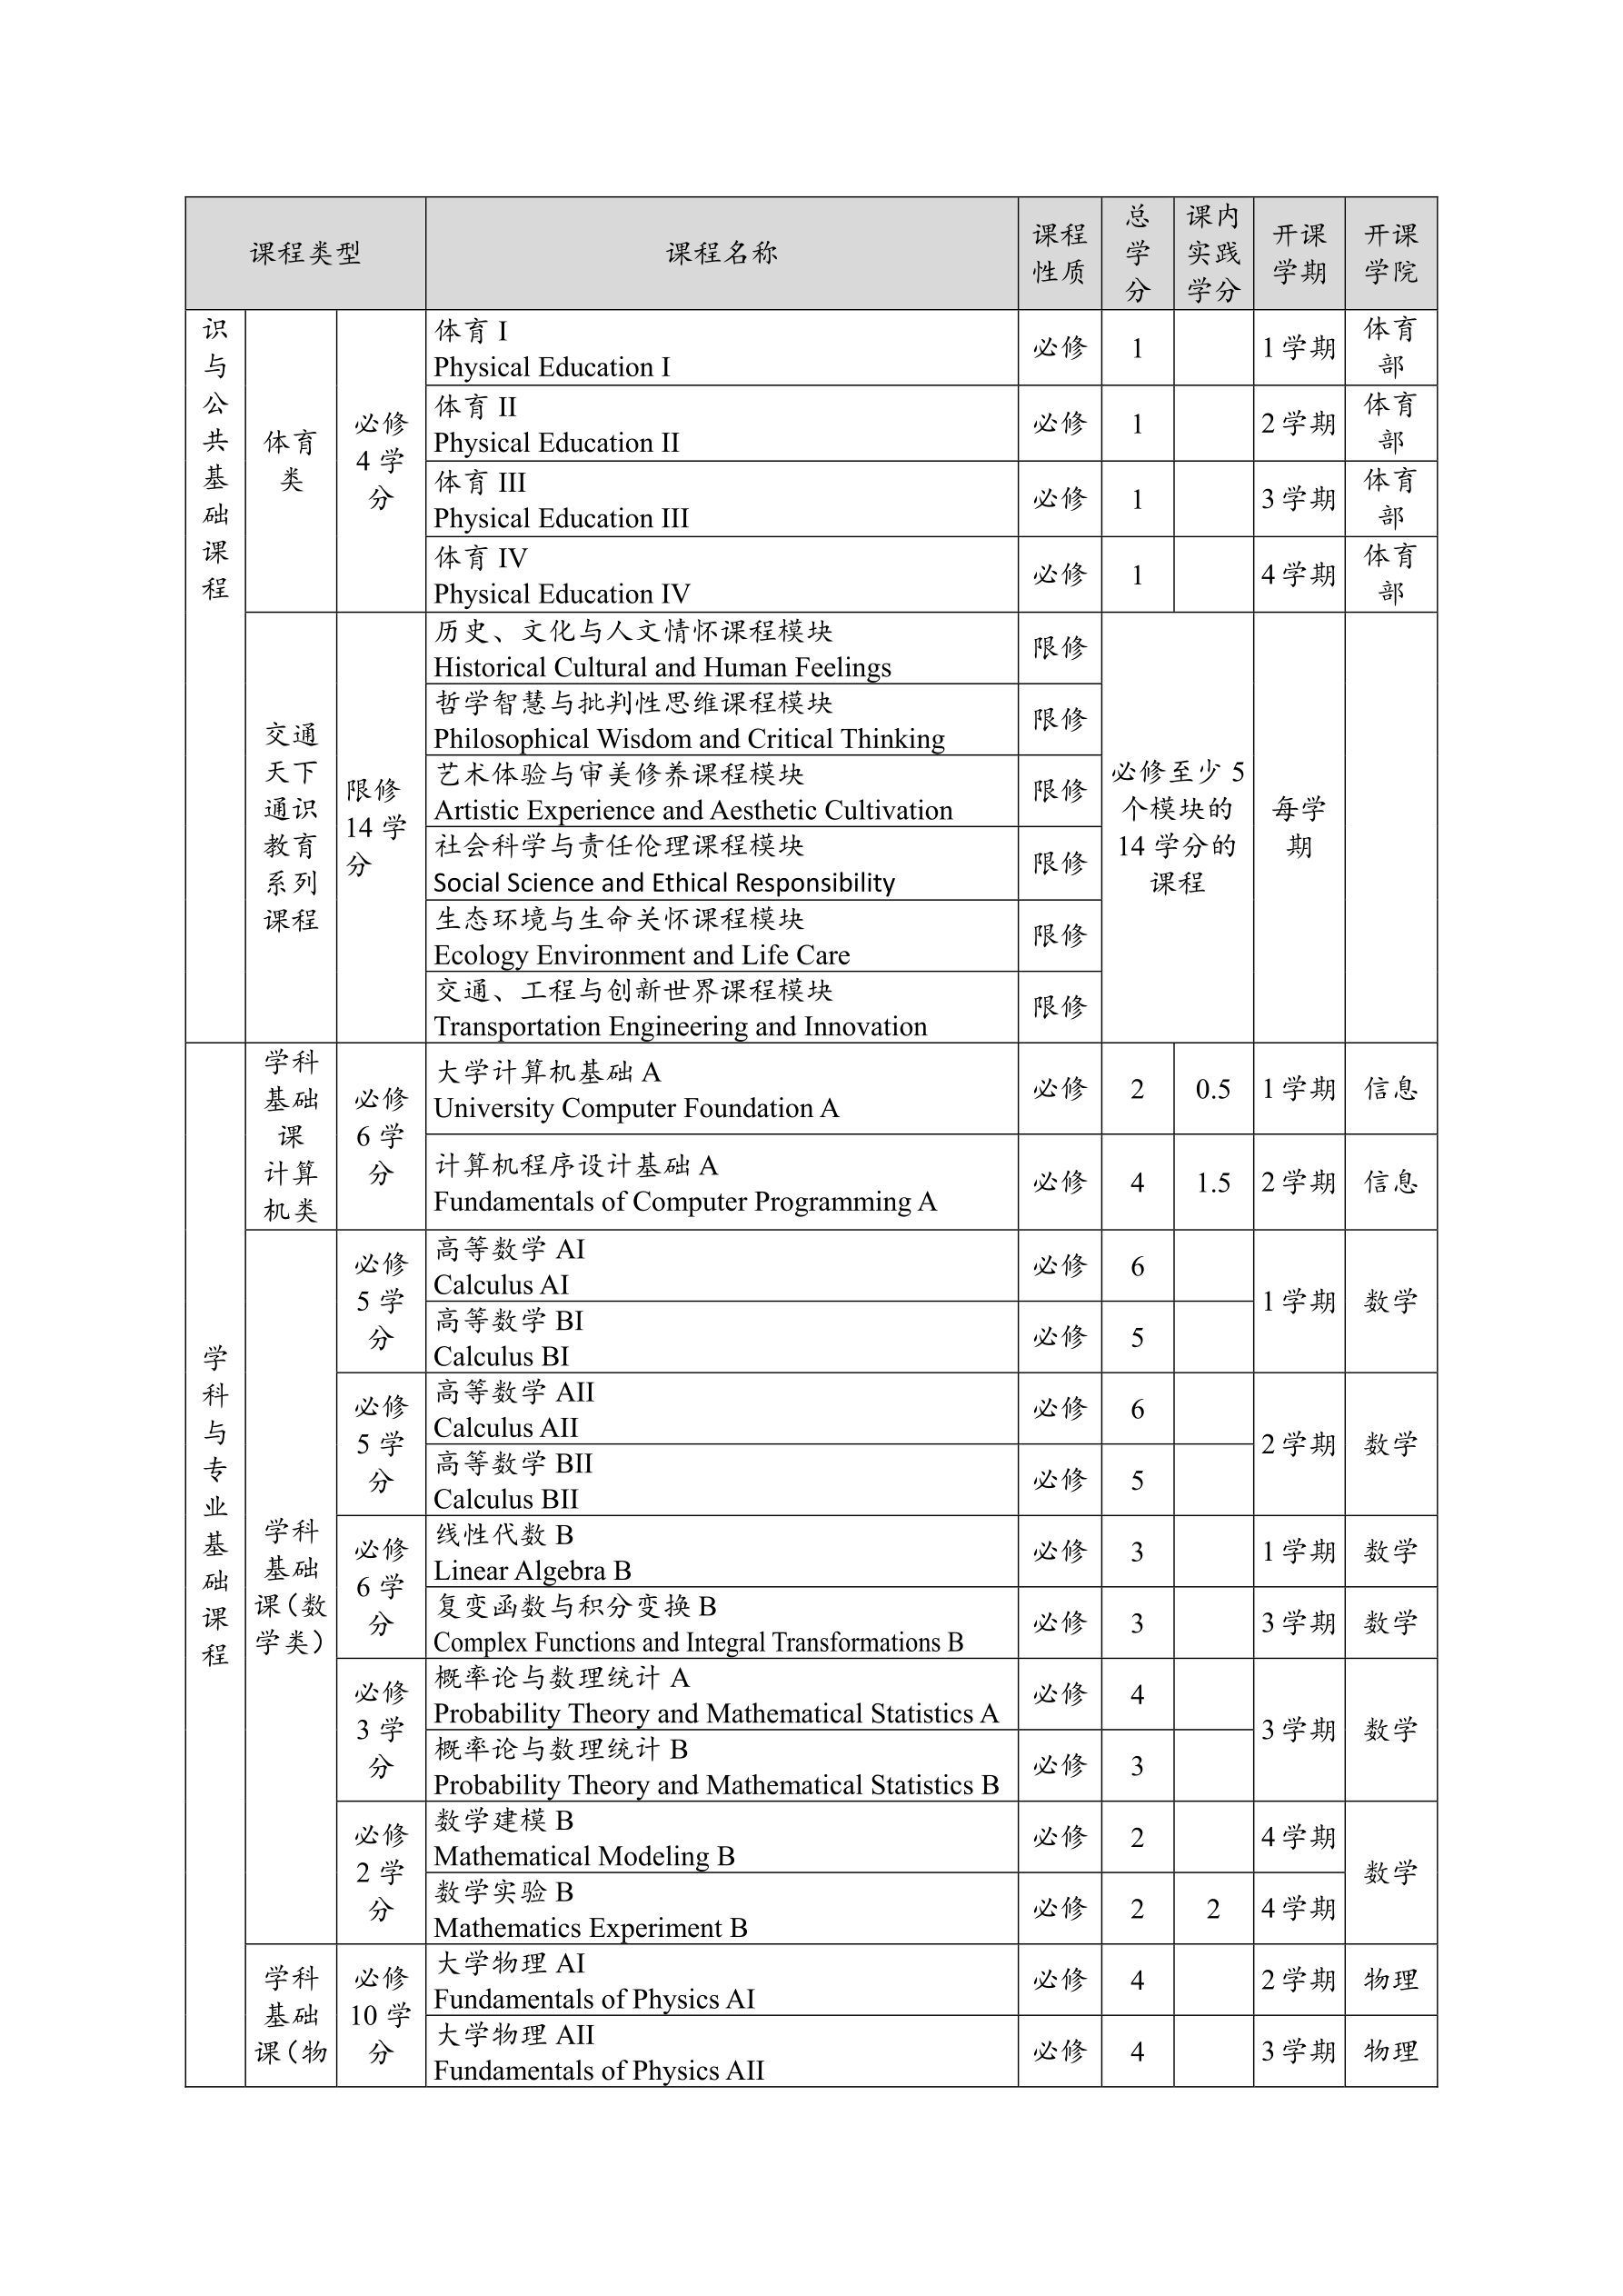 2014电气工程及其自动化专业培养方案(终稿)_10.png